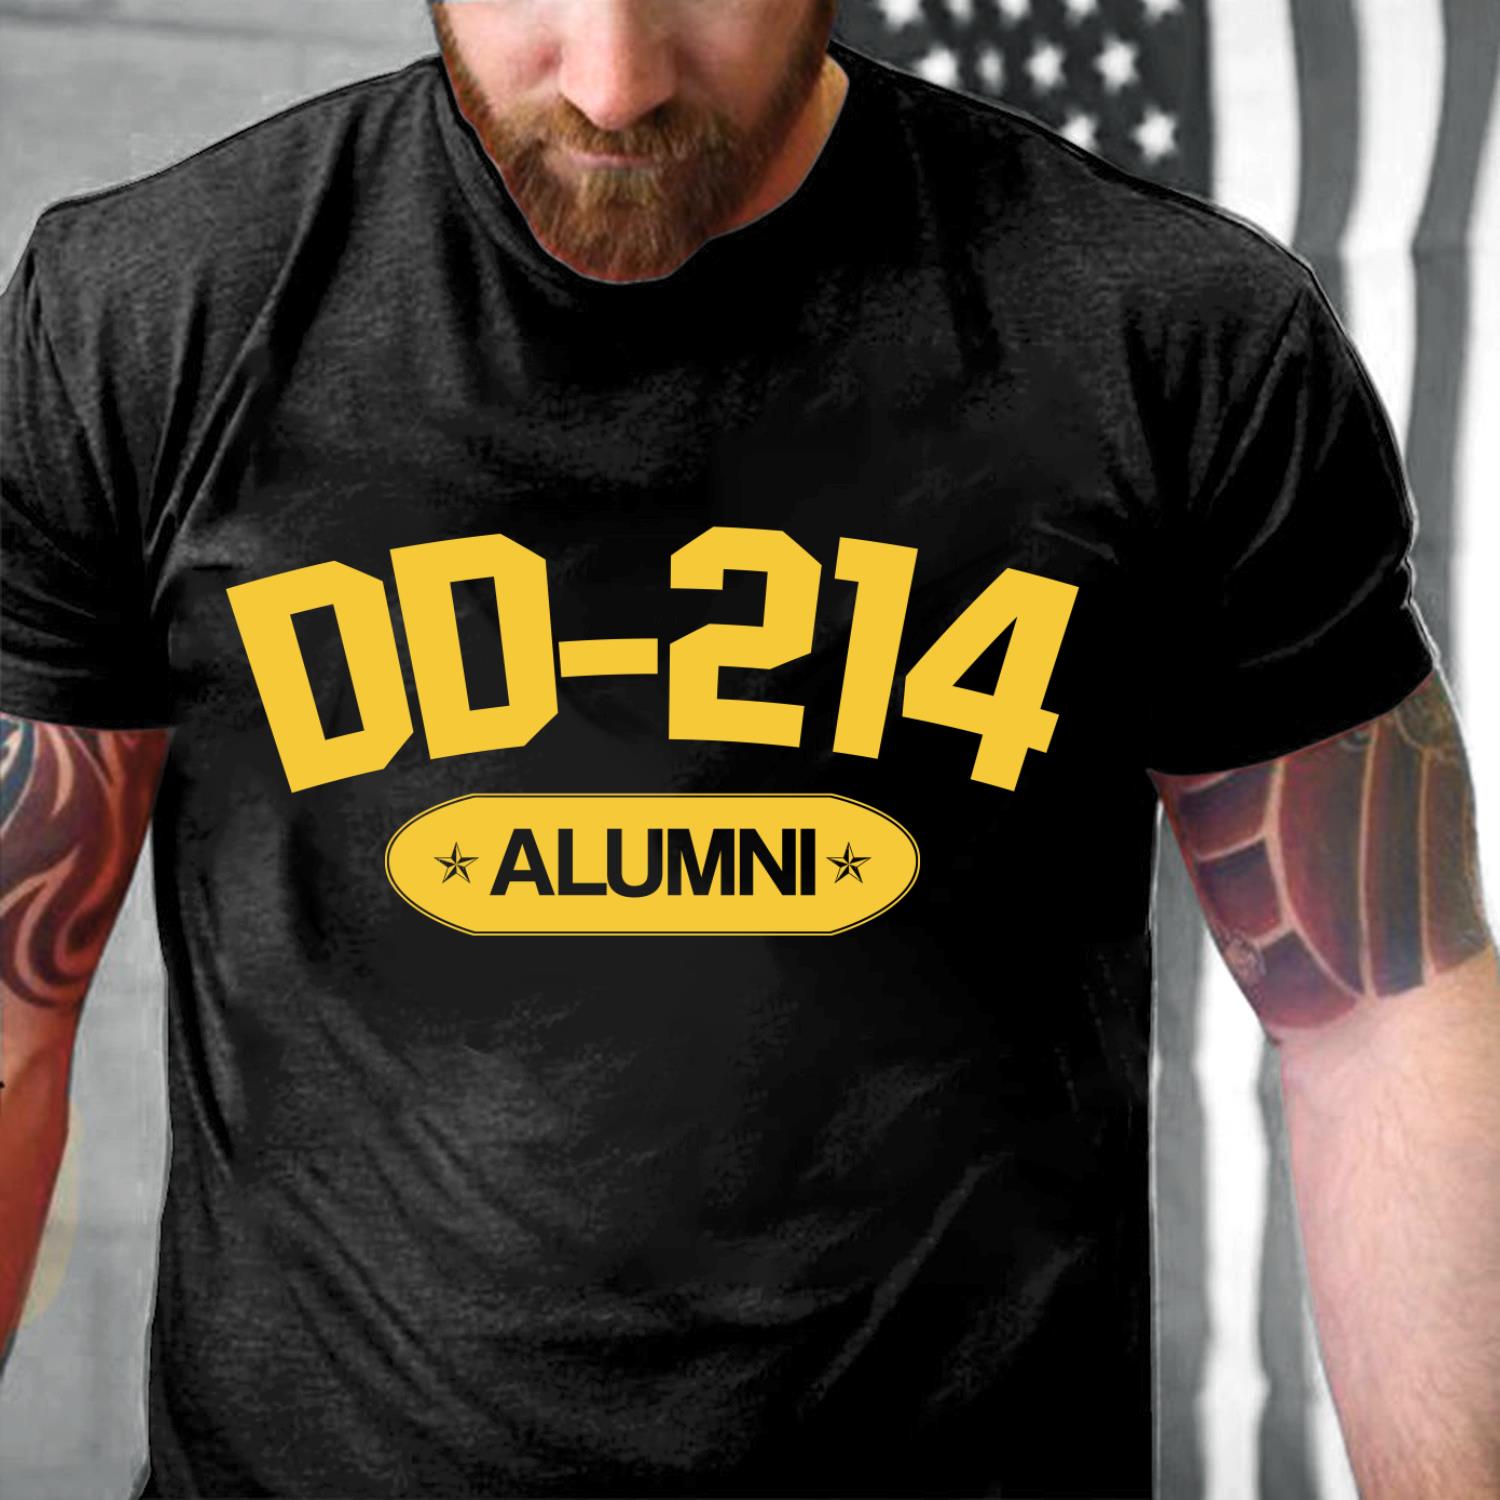 DD-214 ALUMNI, Gift For Veteran T-Shirt